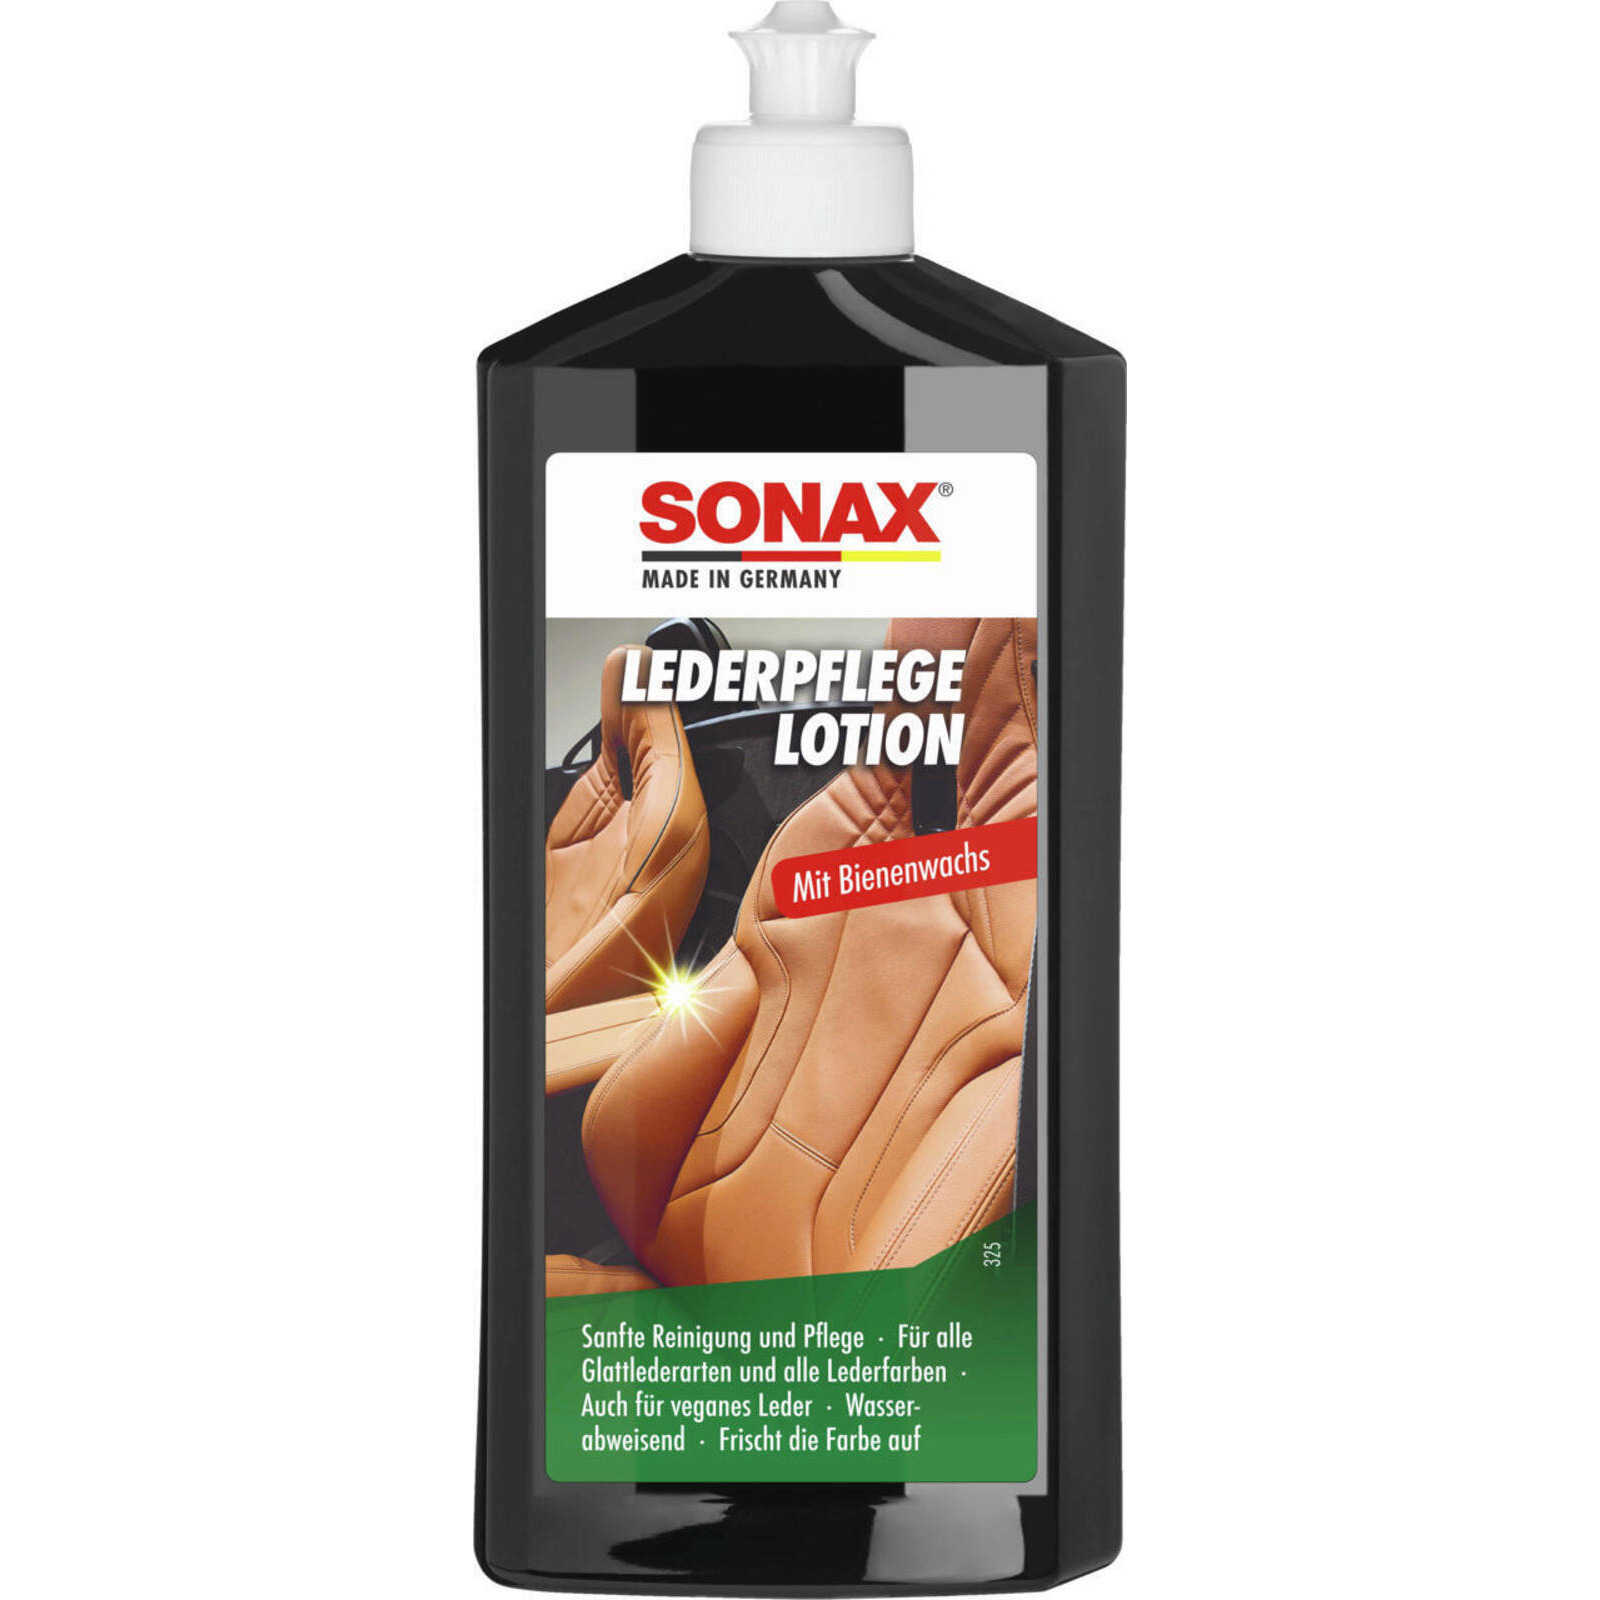 SONAX Lederpflegemittel LederPflegeLotion